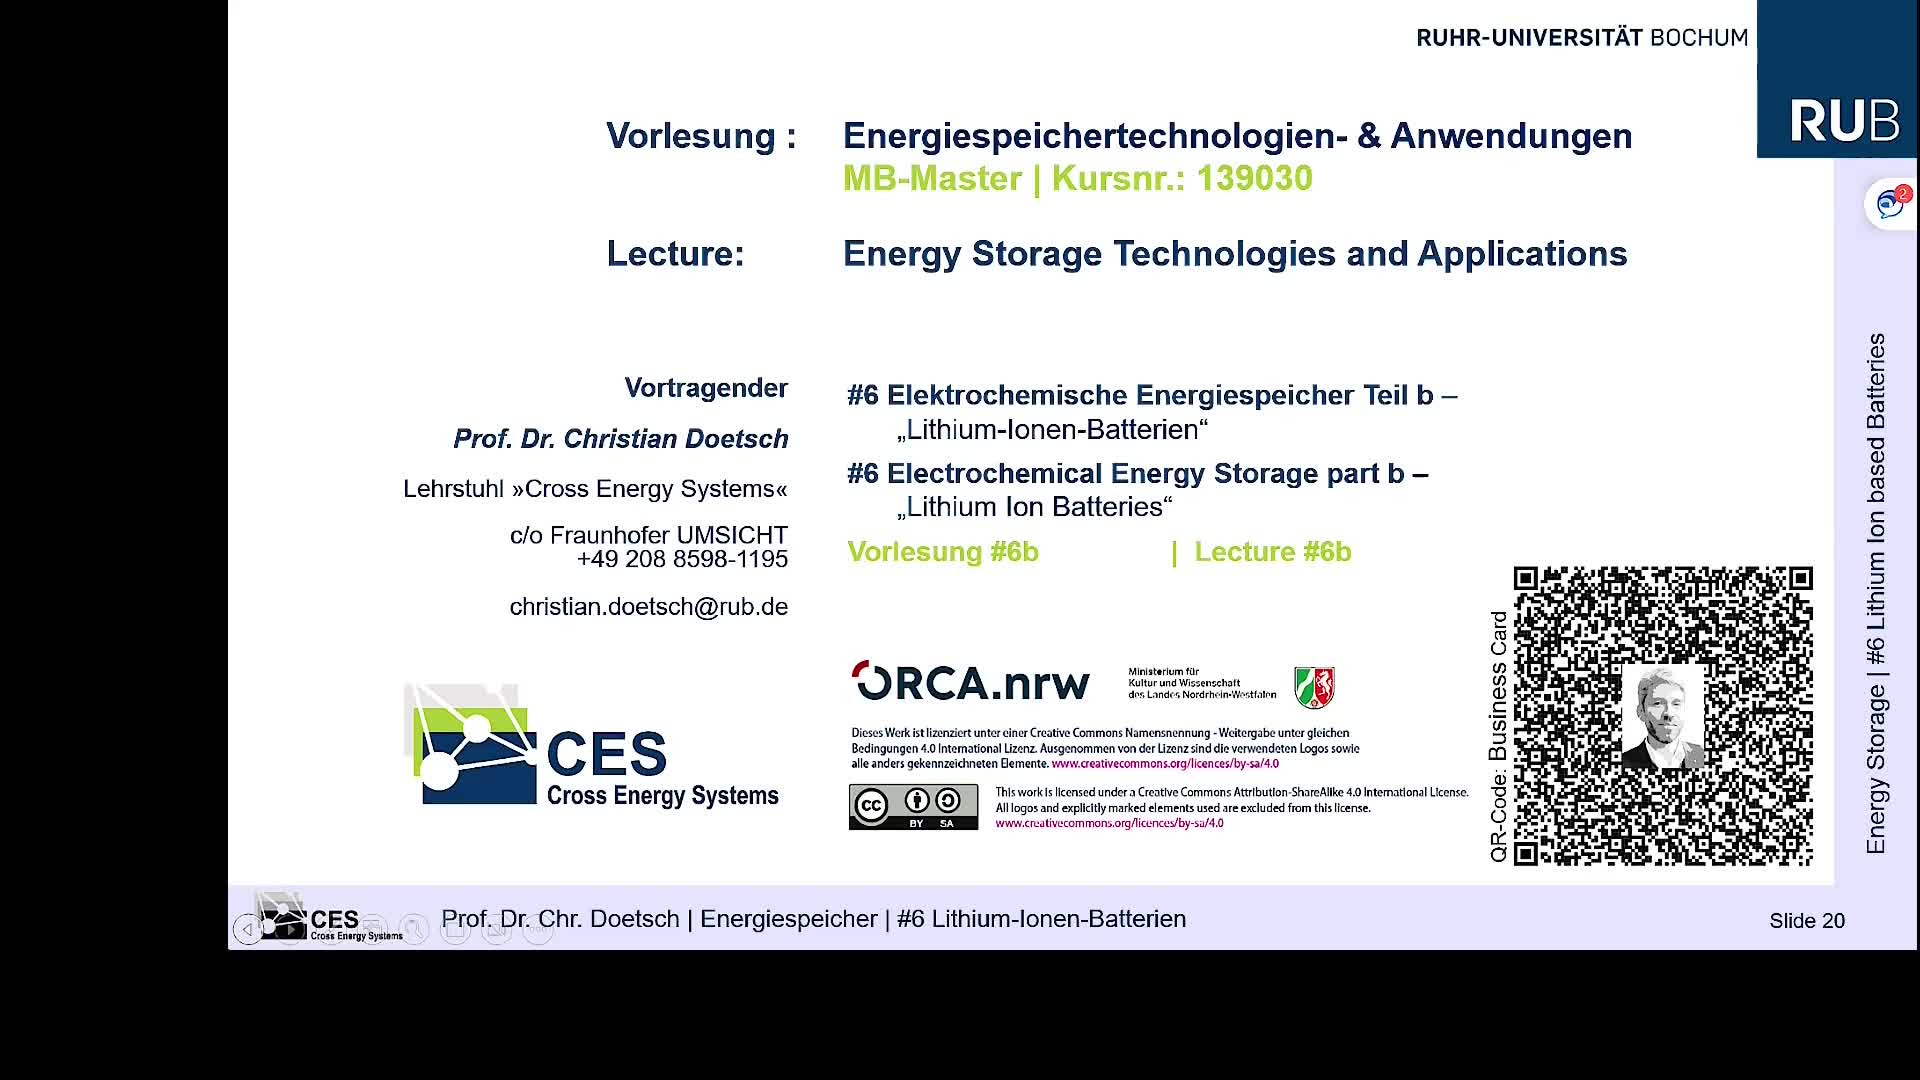 Energiespeichertechnologien- & Anwendungen: 6 b. Elektrochemische